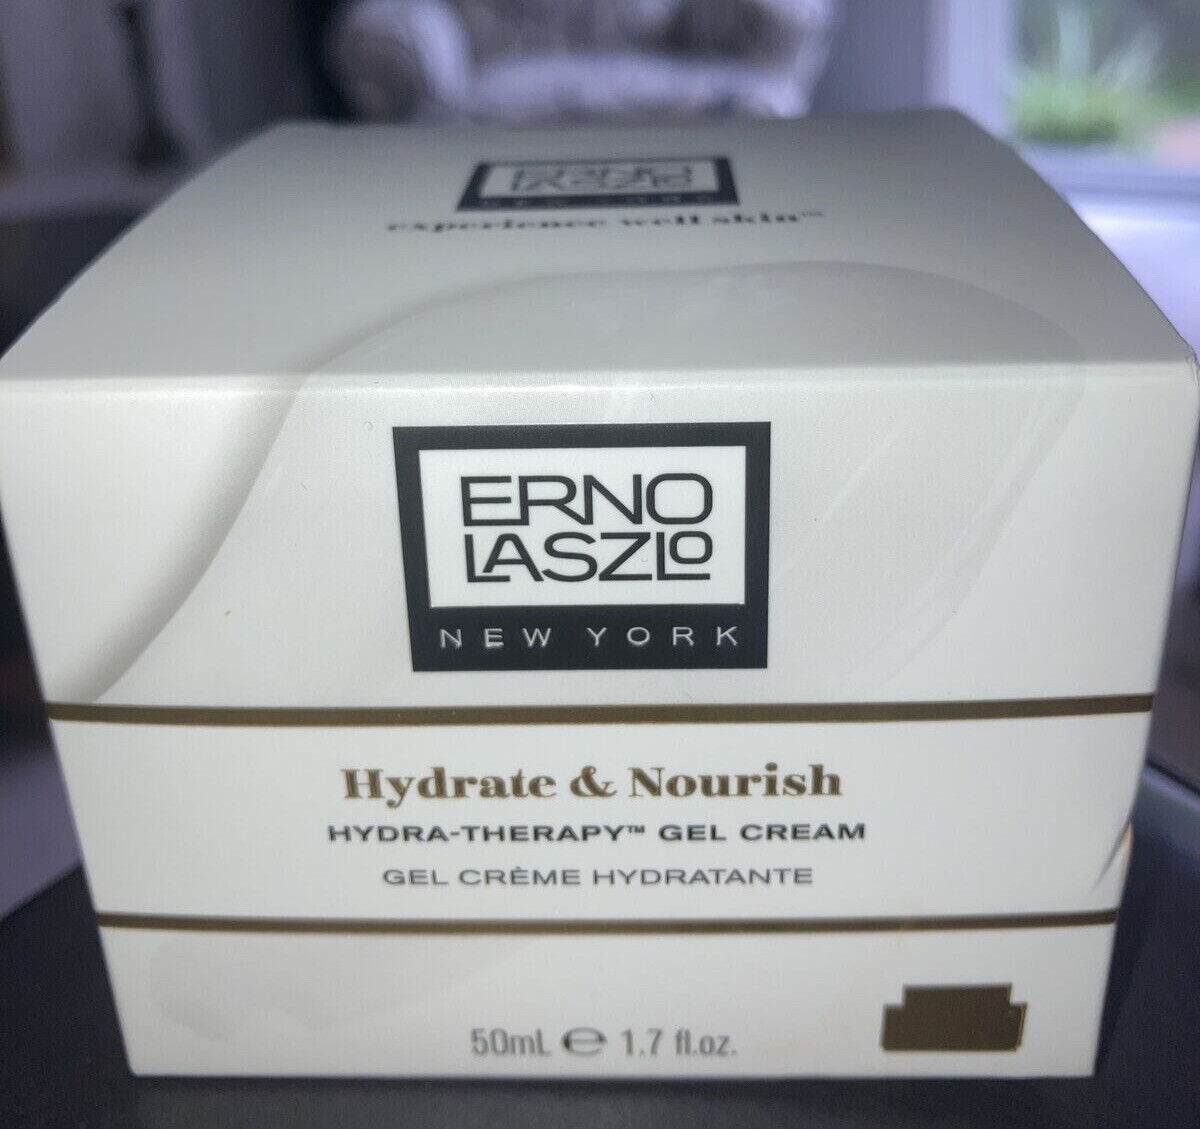 ERNO LASZLO Hydrate & Nourish Hydra-Therapy Gel Cream 1.7oz NEW In Box $140 - $60.50